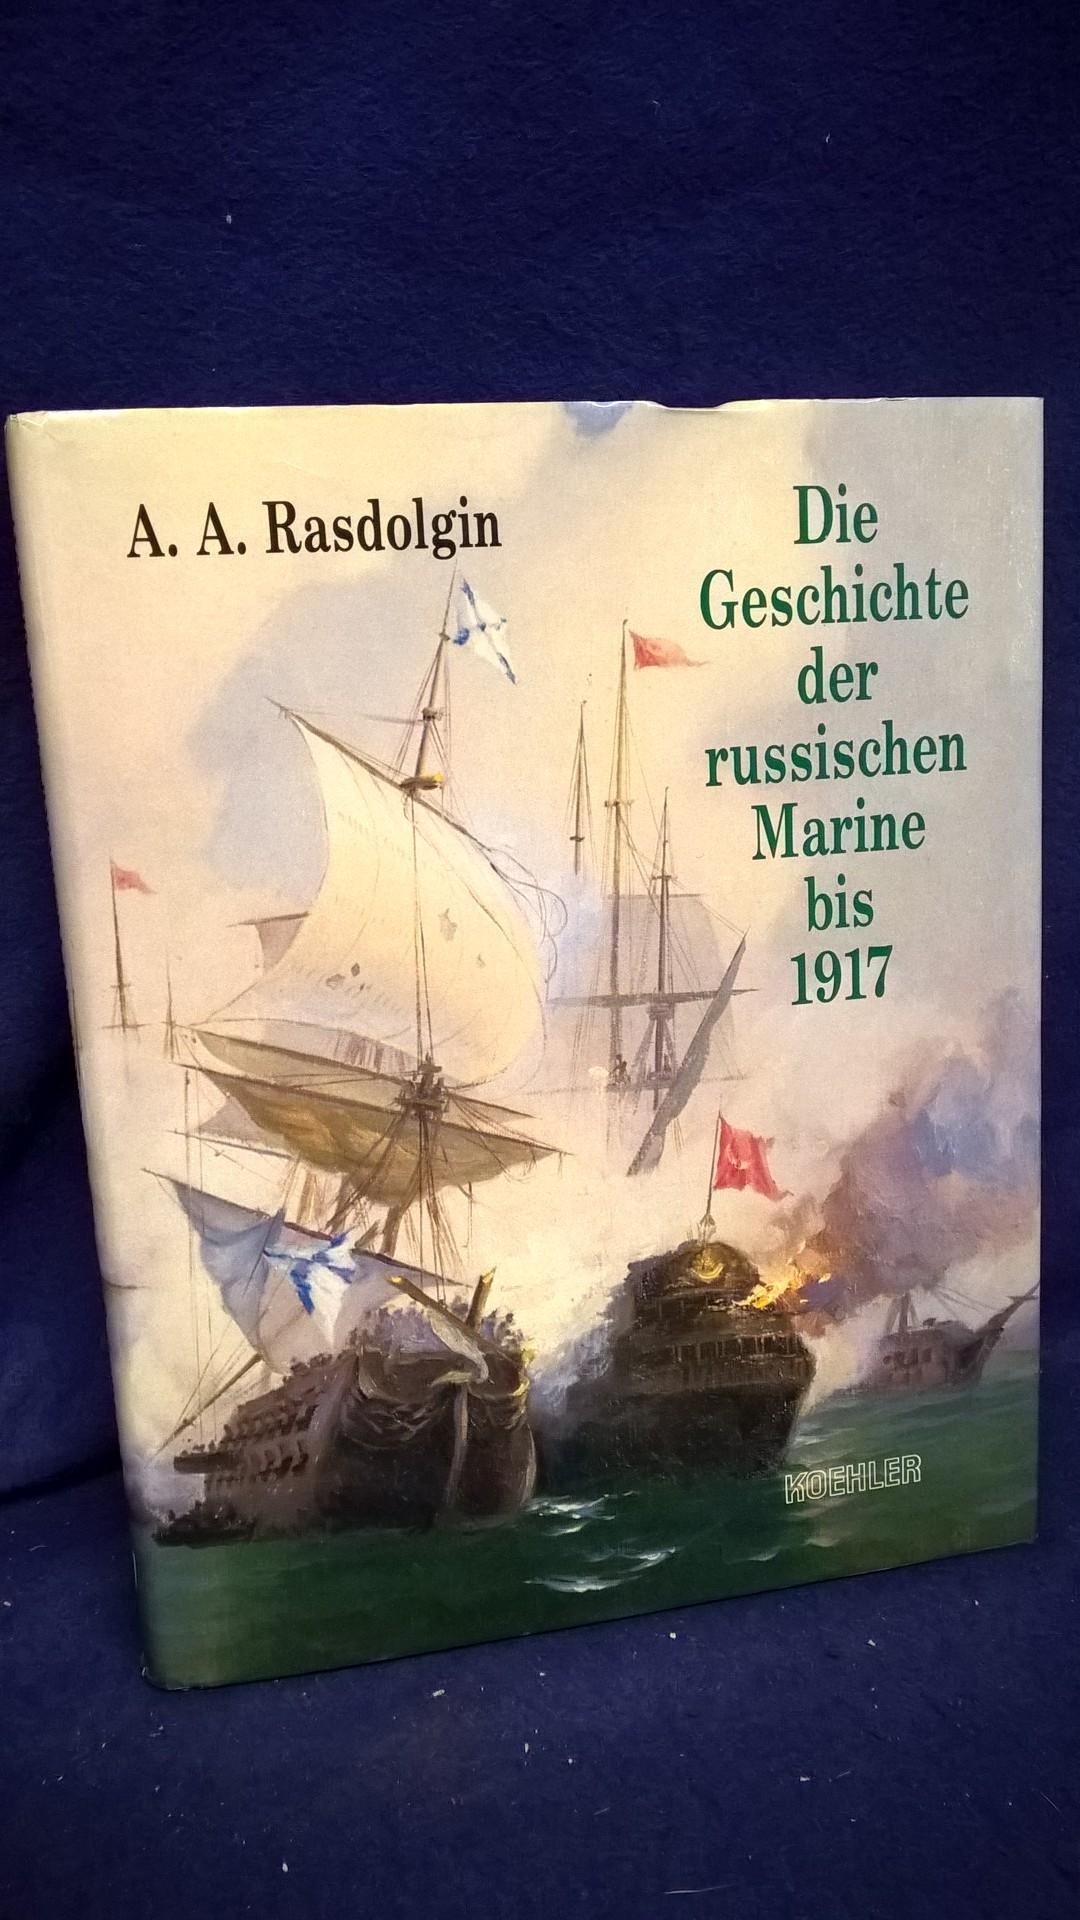 Die Geschichte der russischen Marine bis 1917.